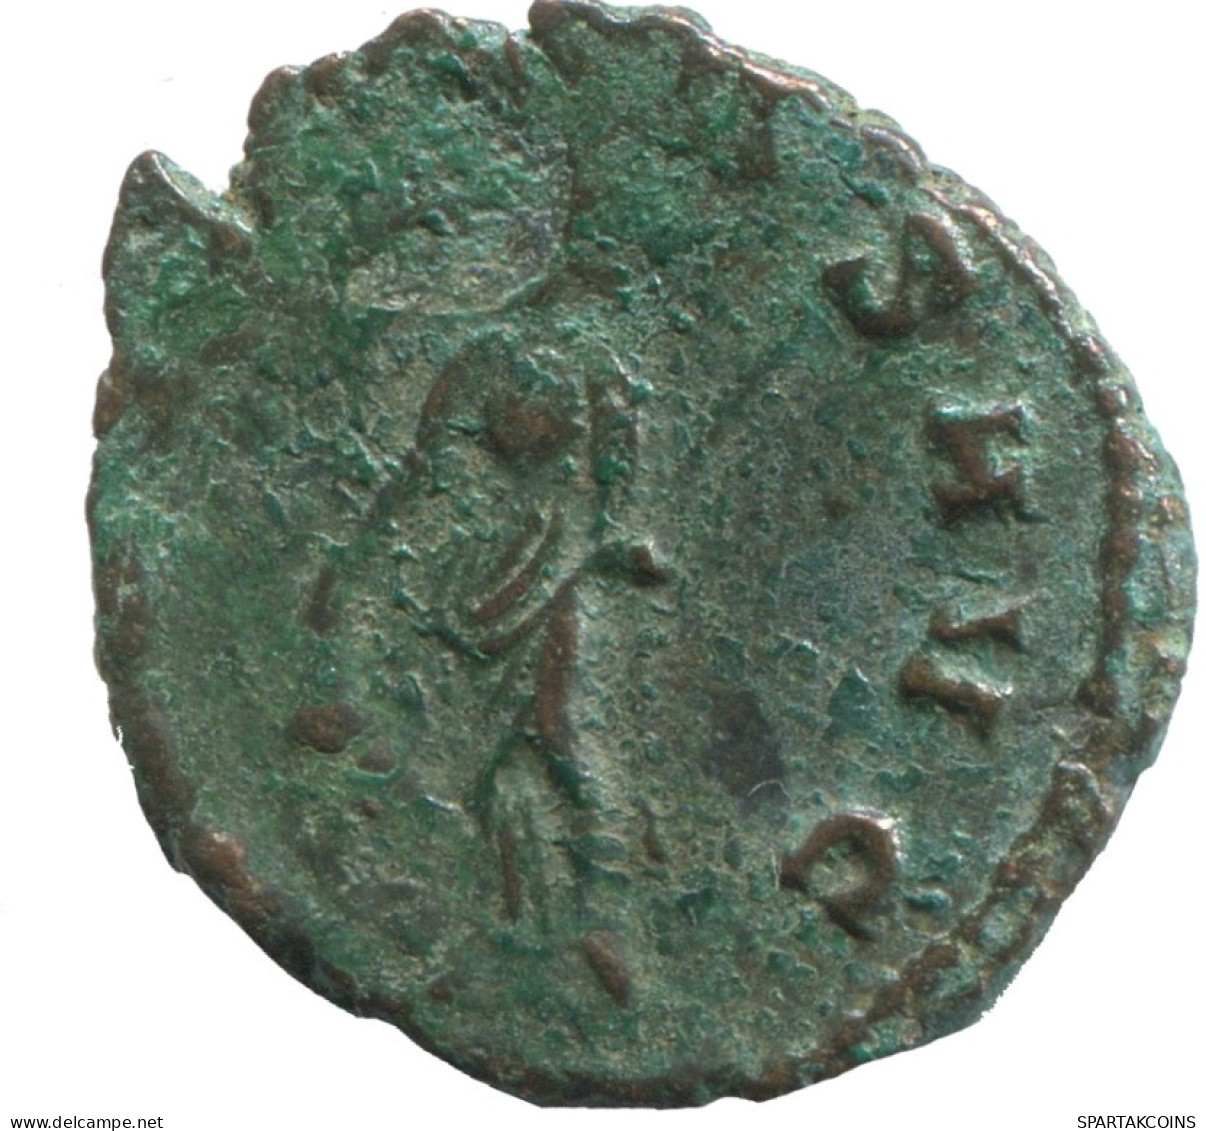 CLAUDIUS II GOTHICUS 268-270AD 2.7g/20mm ROMAN IMPERIO Moneda #ANN1175.15.E.A - Der Soldatenkaiser (die Militärkrise) (235 / 284)